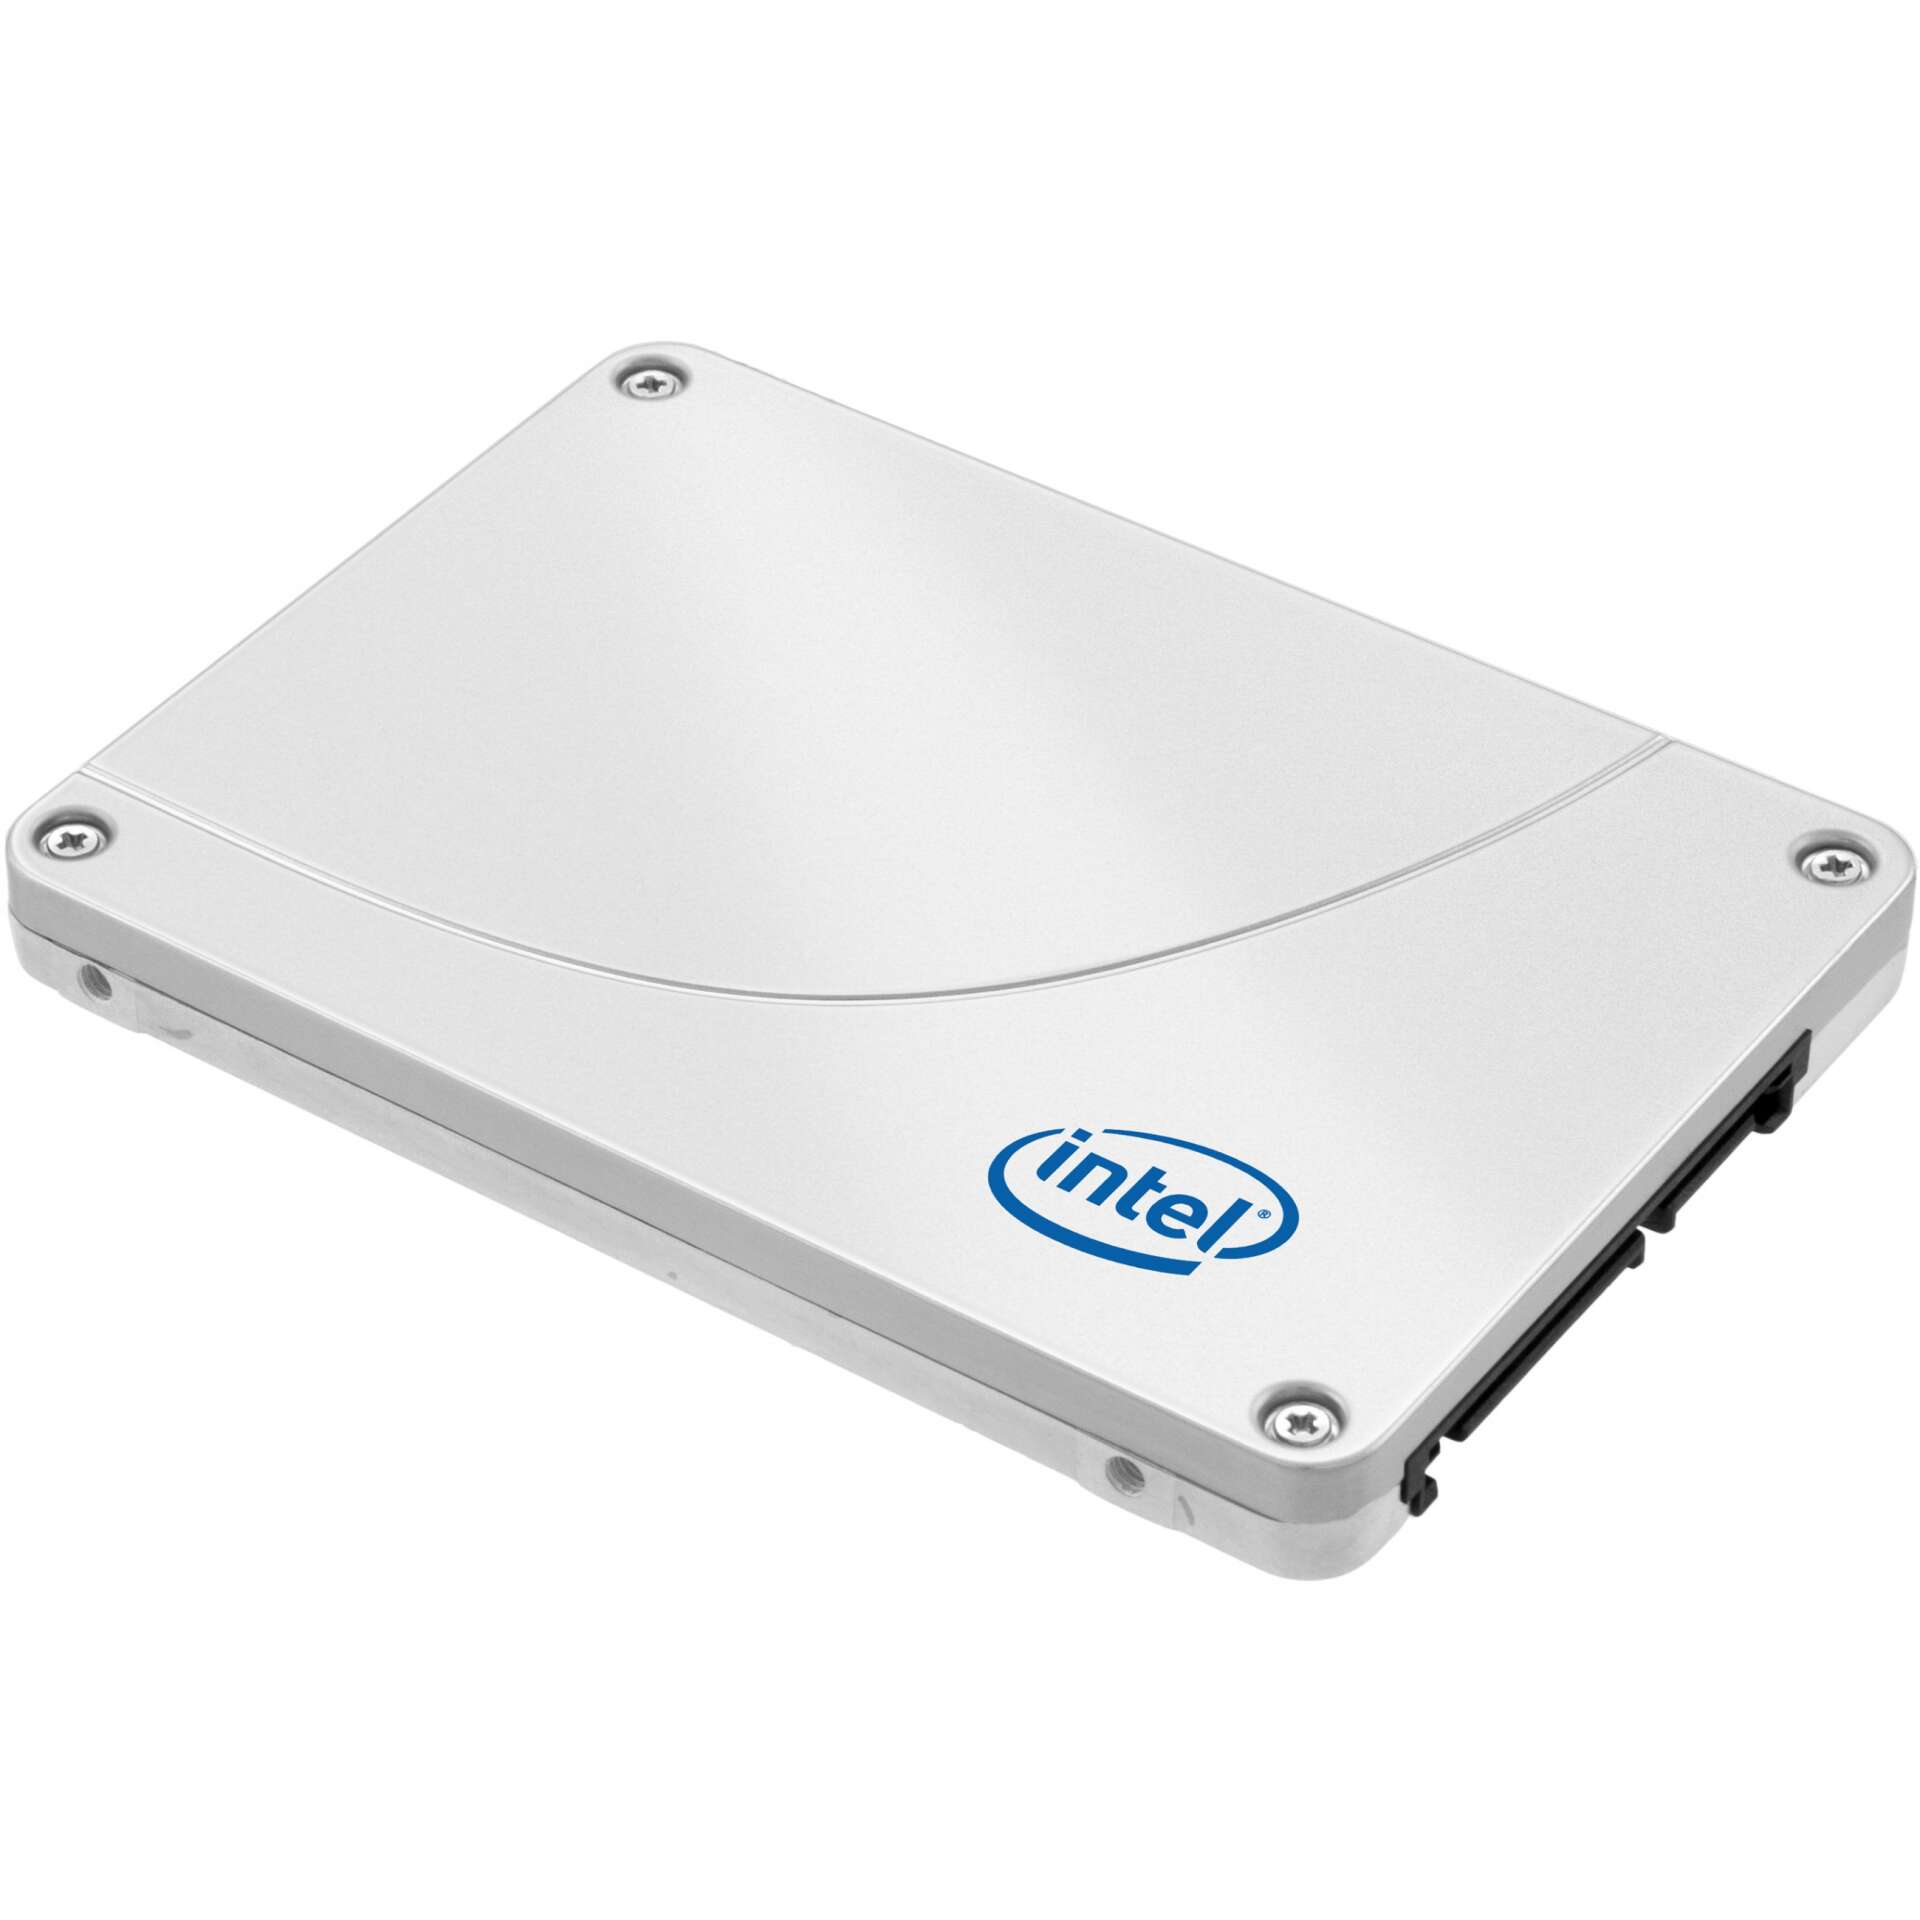 Intel d3 s4520 ssd meghajtó 2.5" 240 gb serial ata iii tlc 3d nand